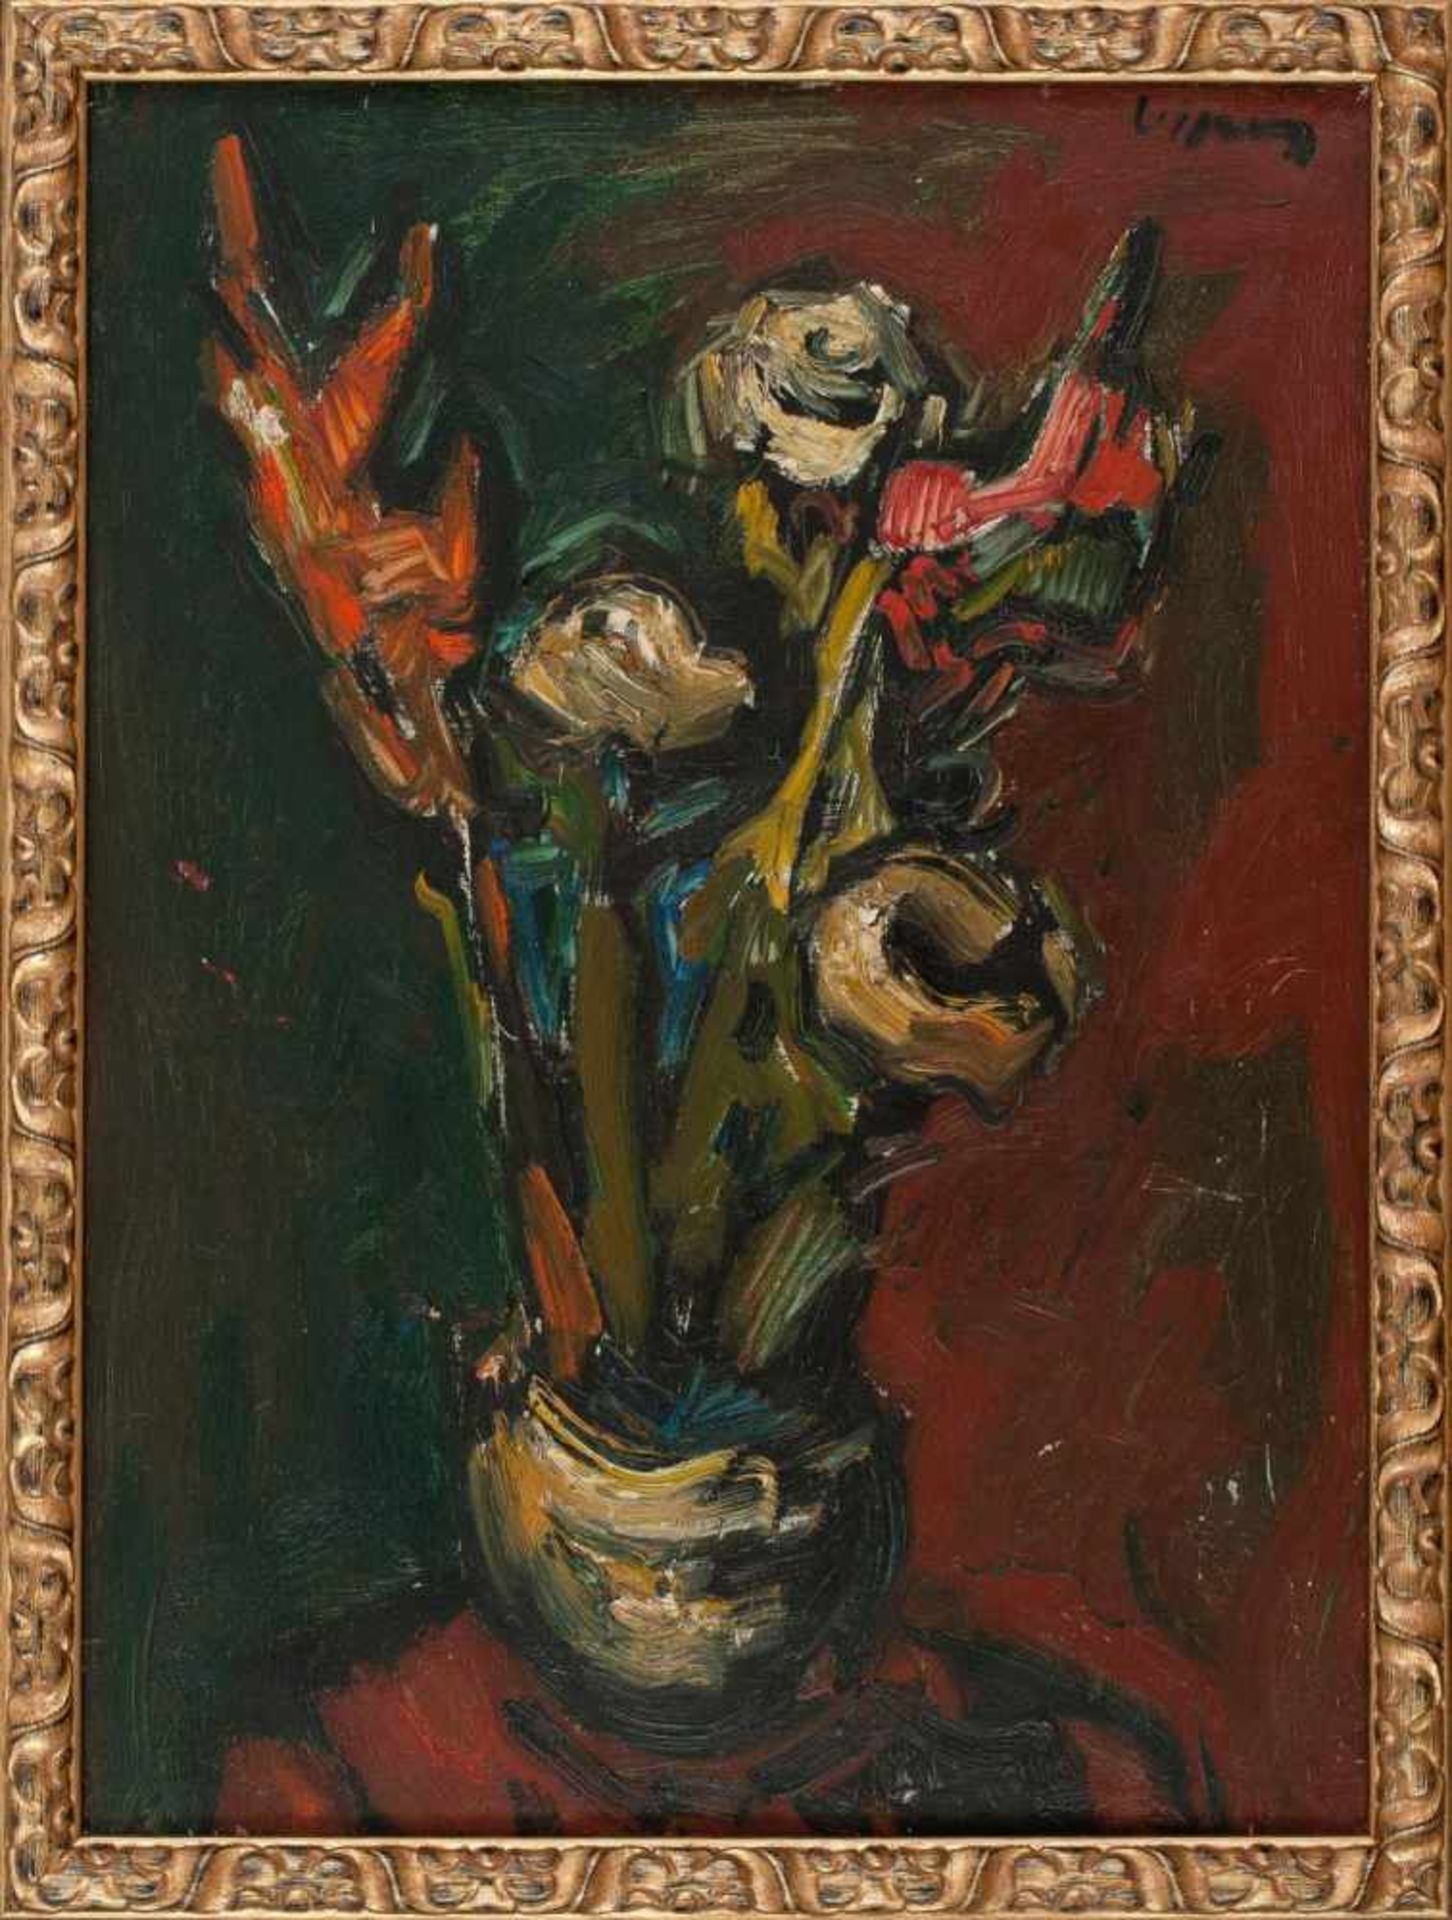 BlumenstilllebenSylvain Vigny (Wien 1903 - 1970 Nizza)Öl auf Leinwand72 x 53 cm, signiert rechts